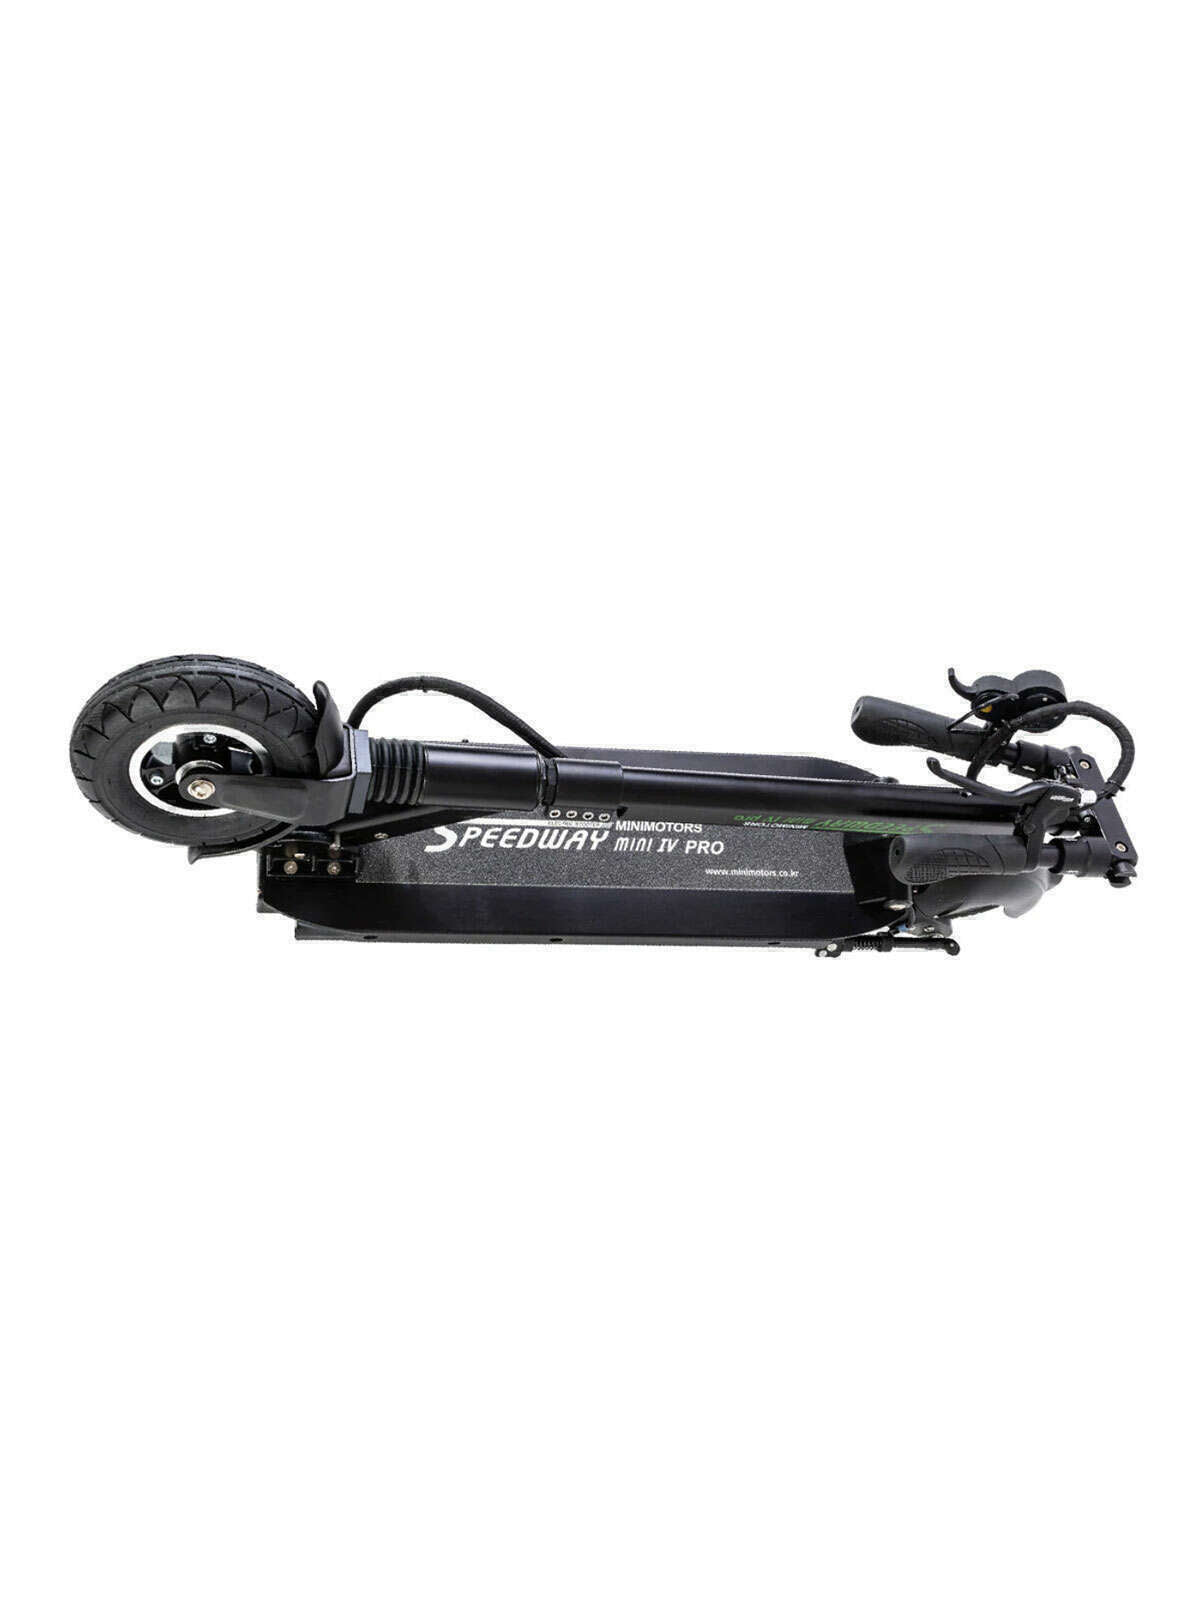 Minimotors - Trottinette patinette électrique Speedway mini 4 Pro